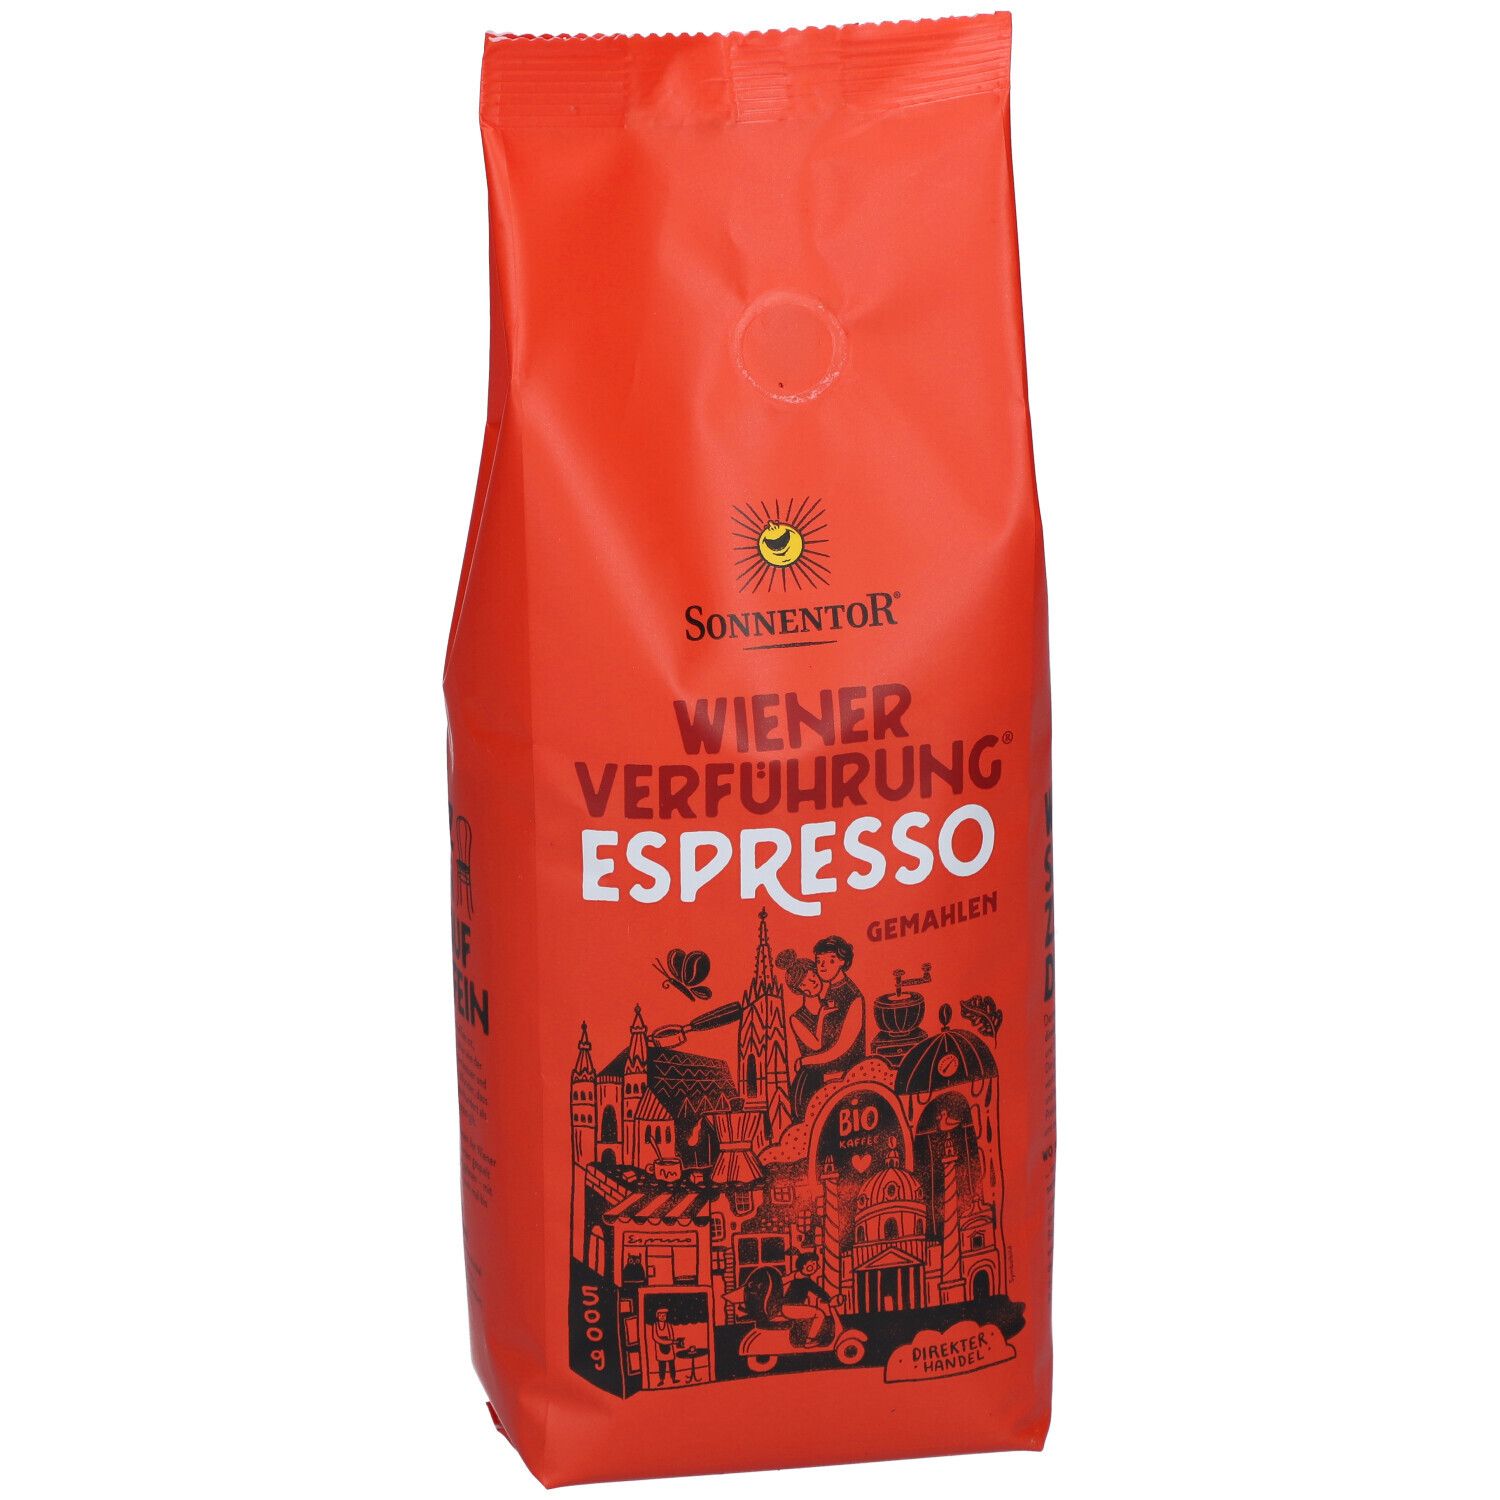 SonnentoR® Wiener Verführung Espresso gemahlen